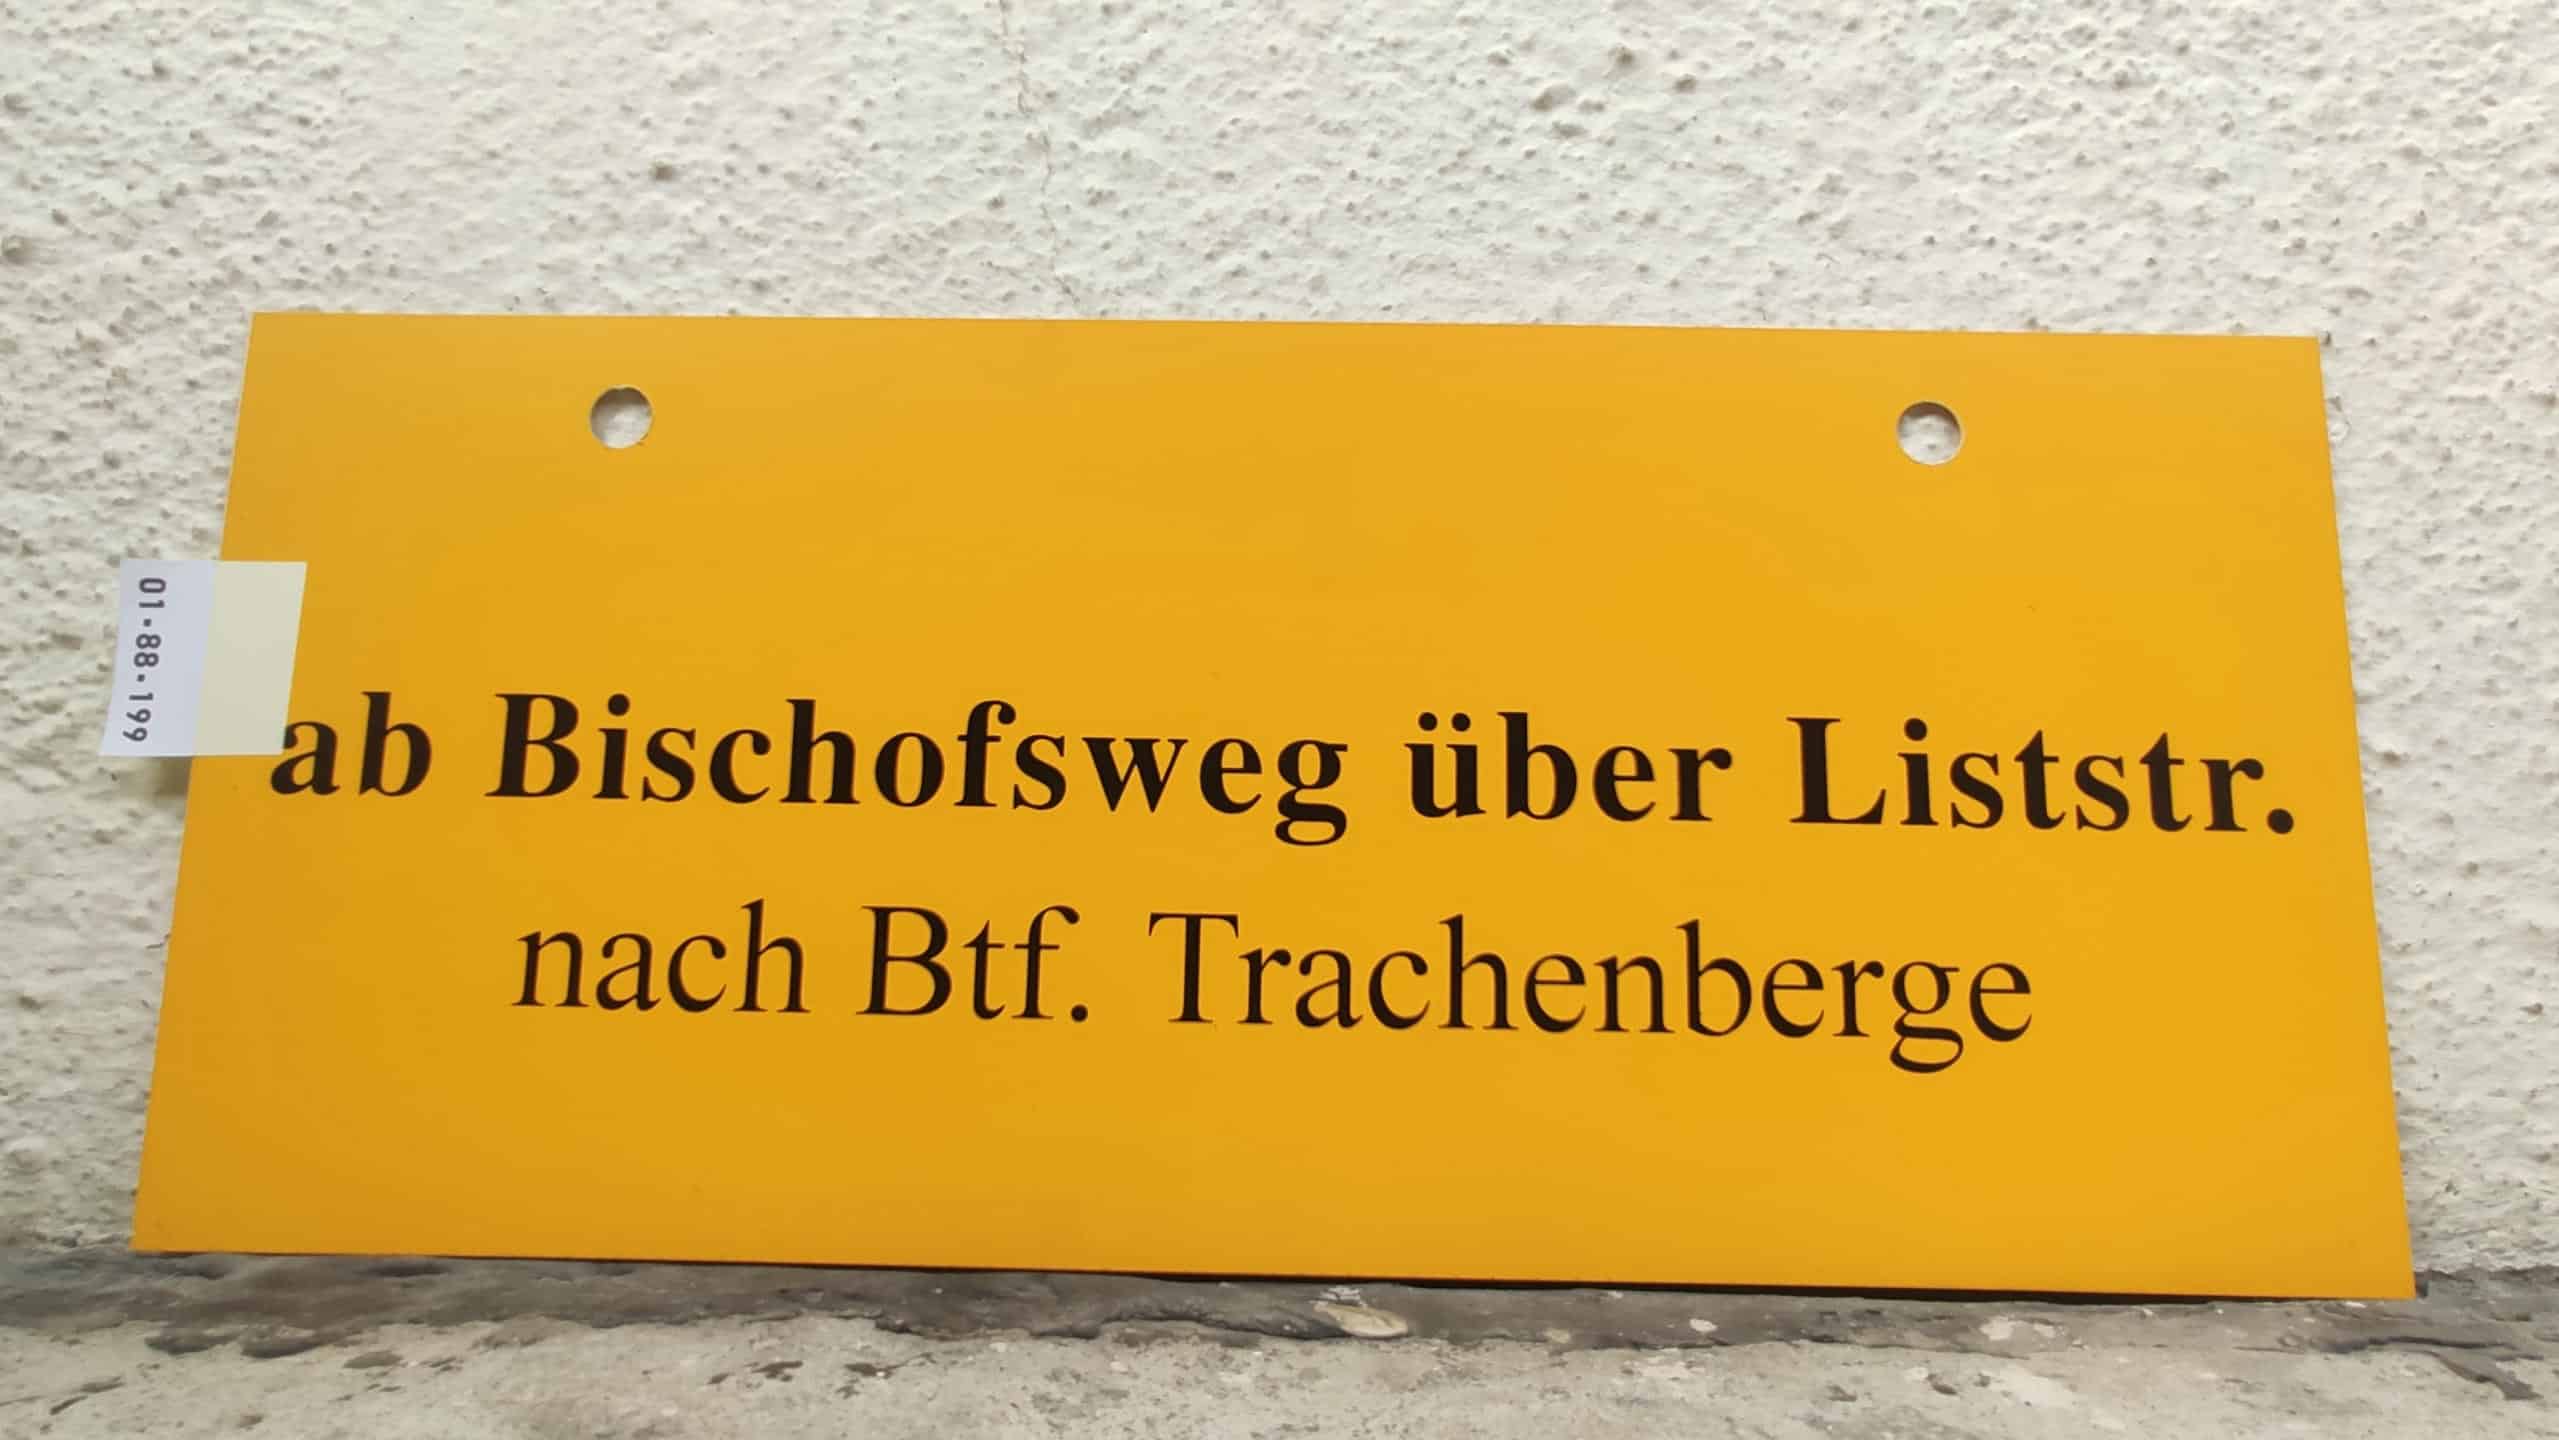 ab Bischofswegnach Btf. Trachenberge